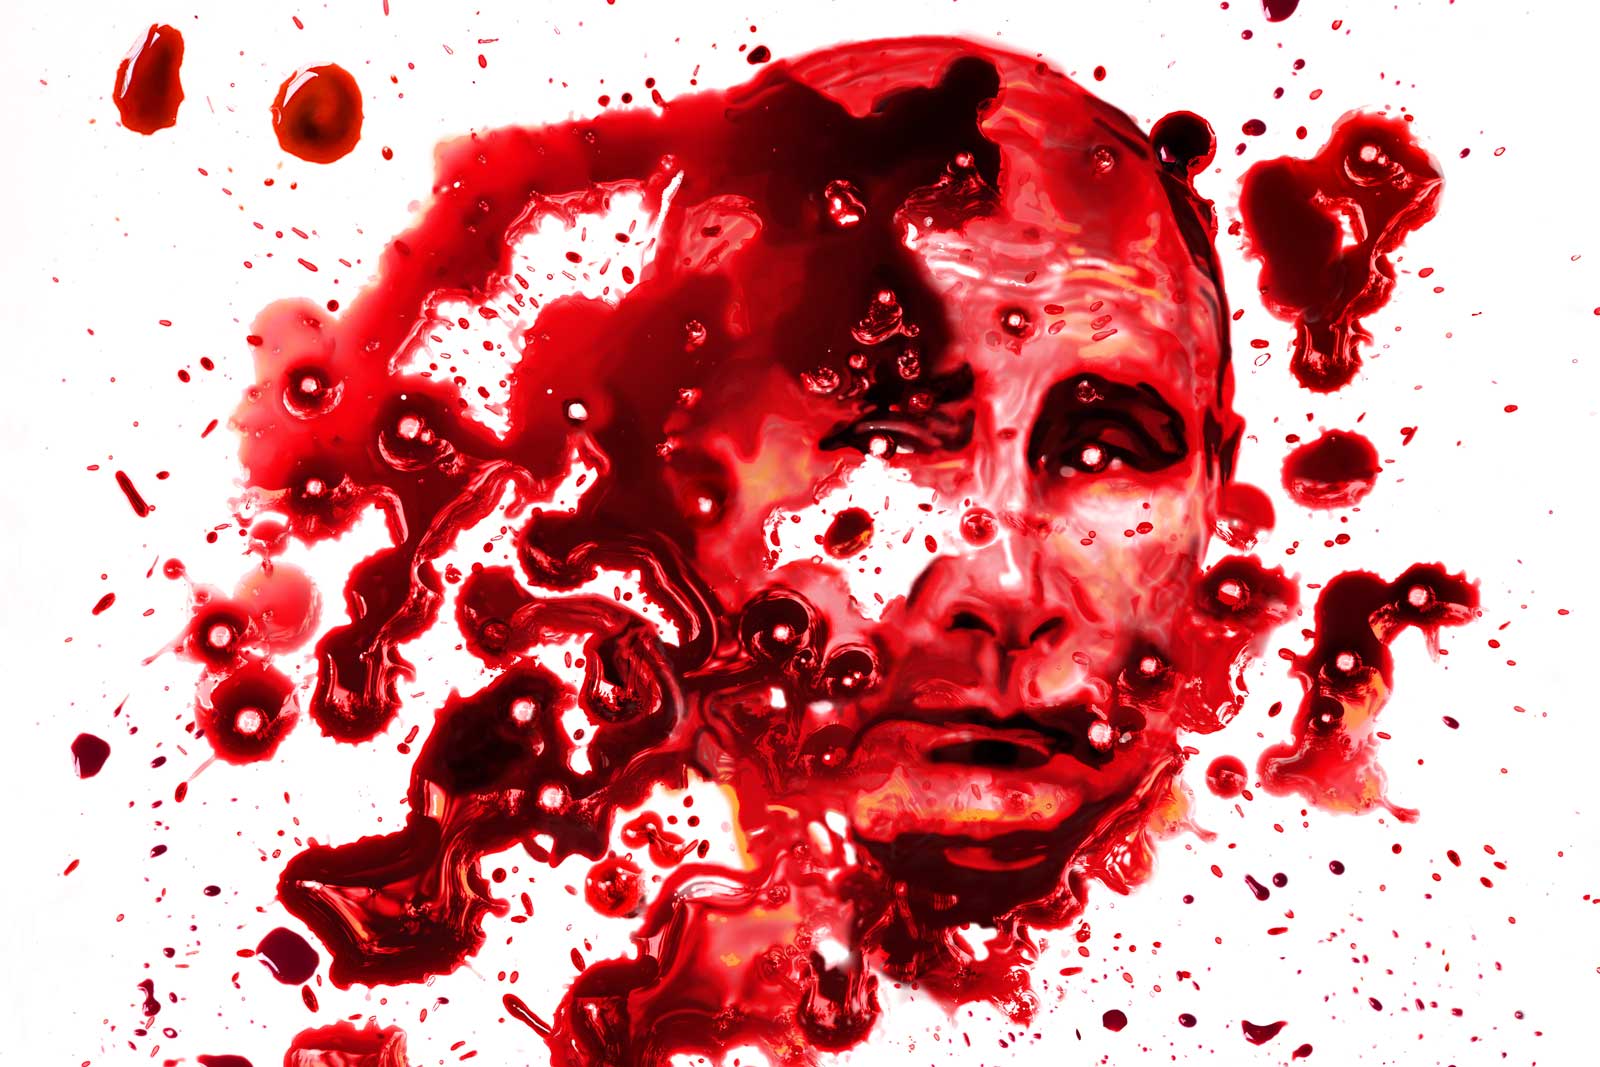 Digital erstelltes Blut-Porträt des russischen Präsidenten Putin.